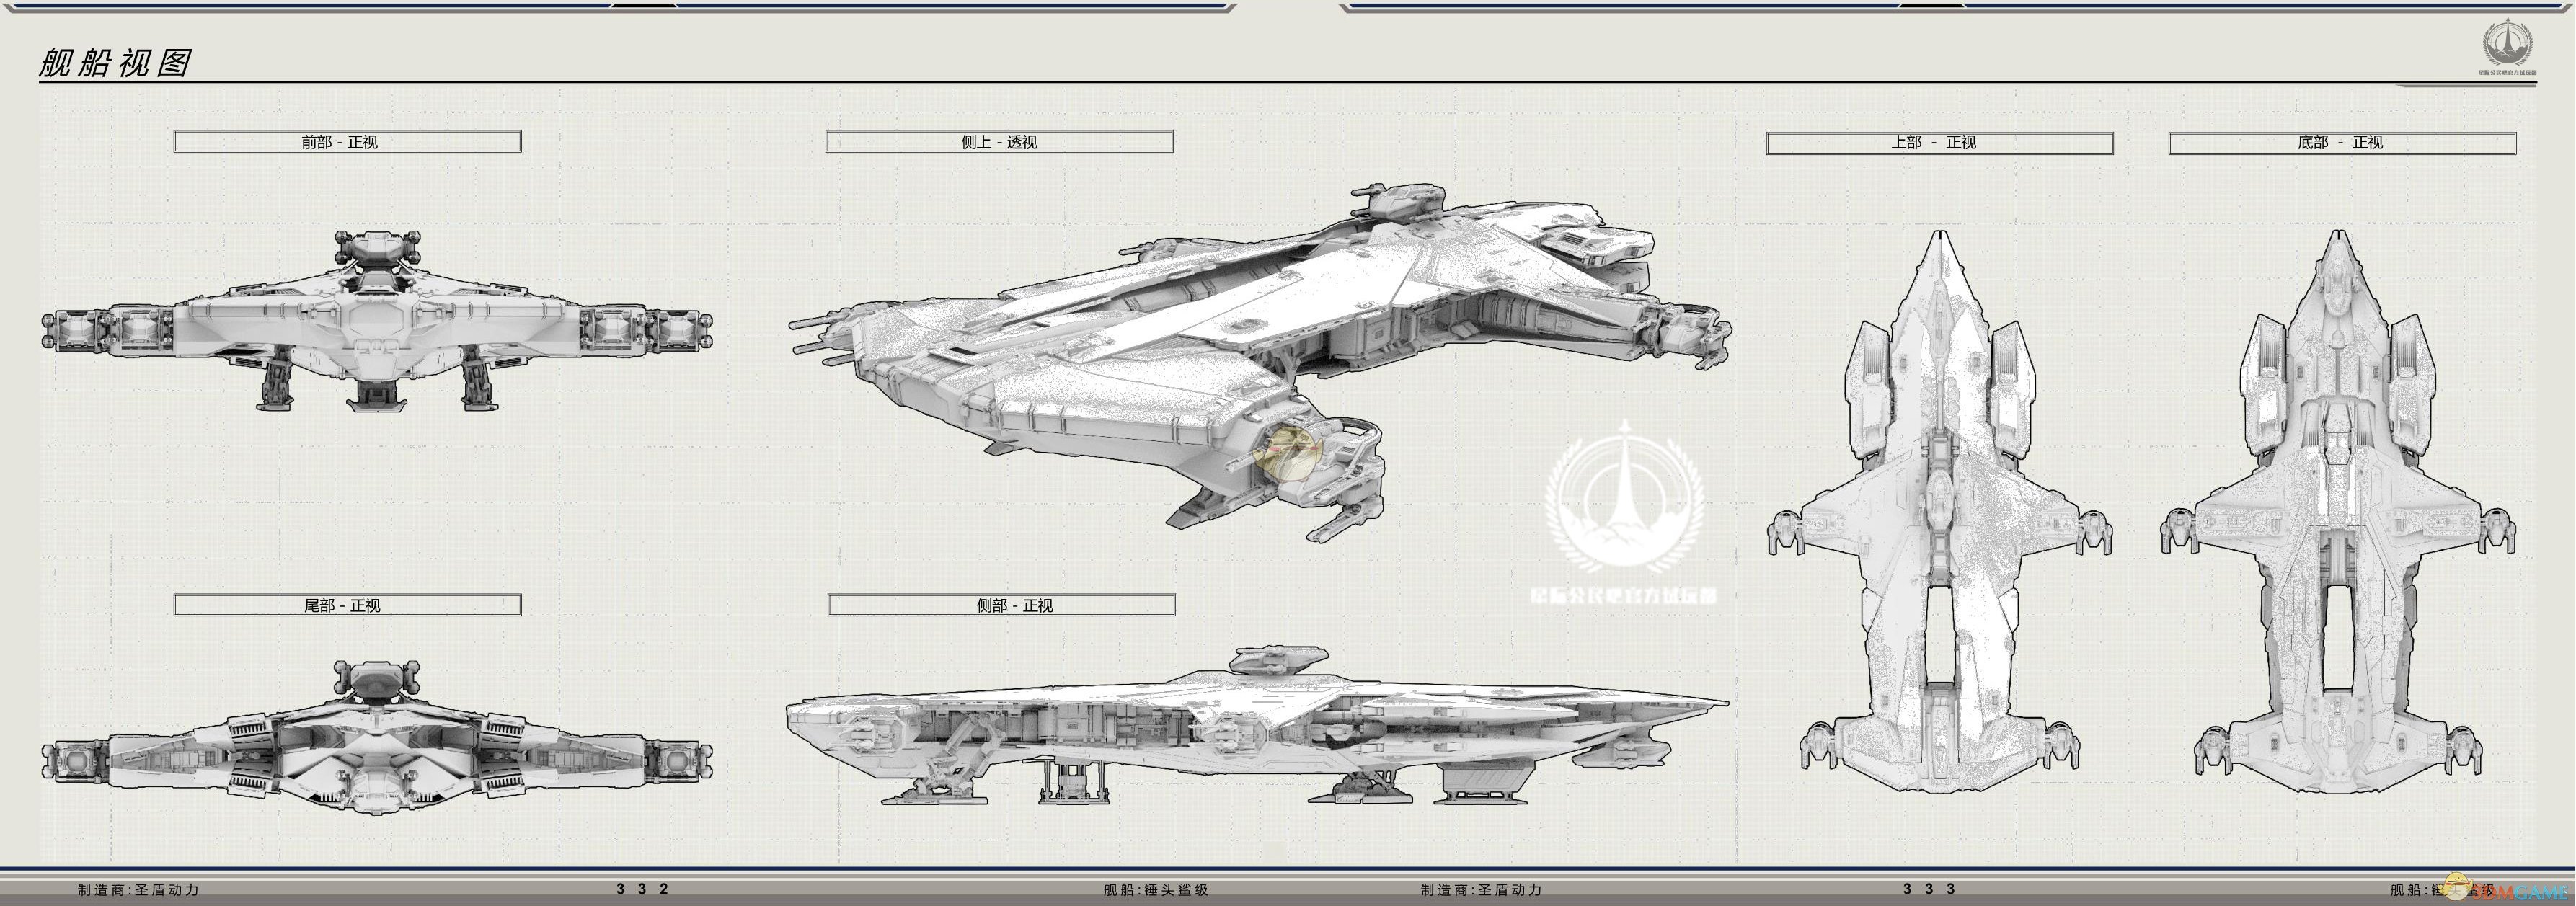 《星际公民》圣盾动力锤头鲨级舰船说明手册一览